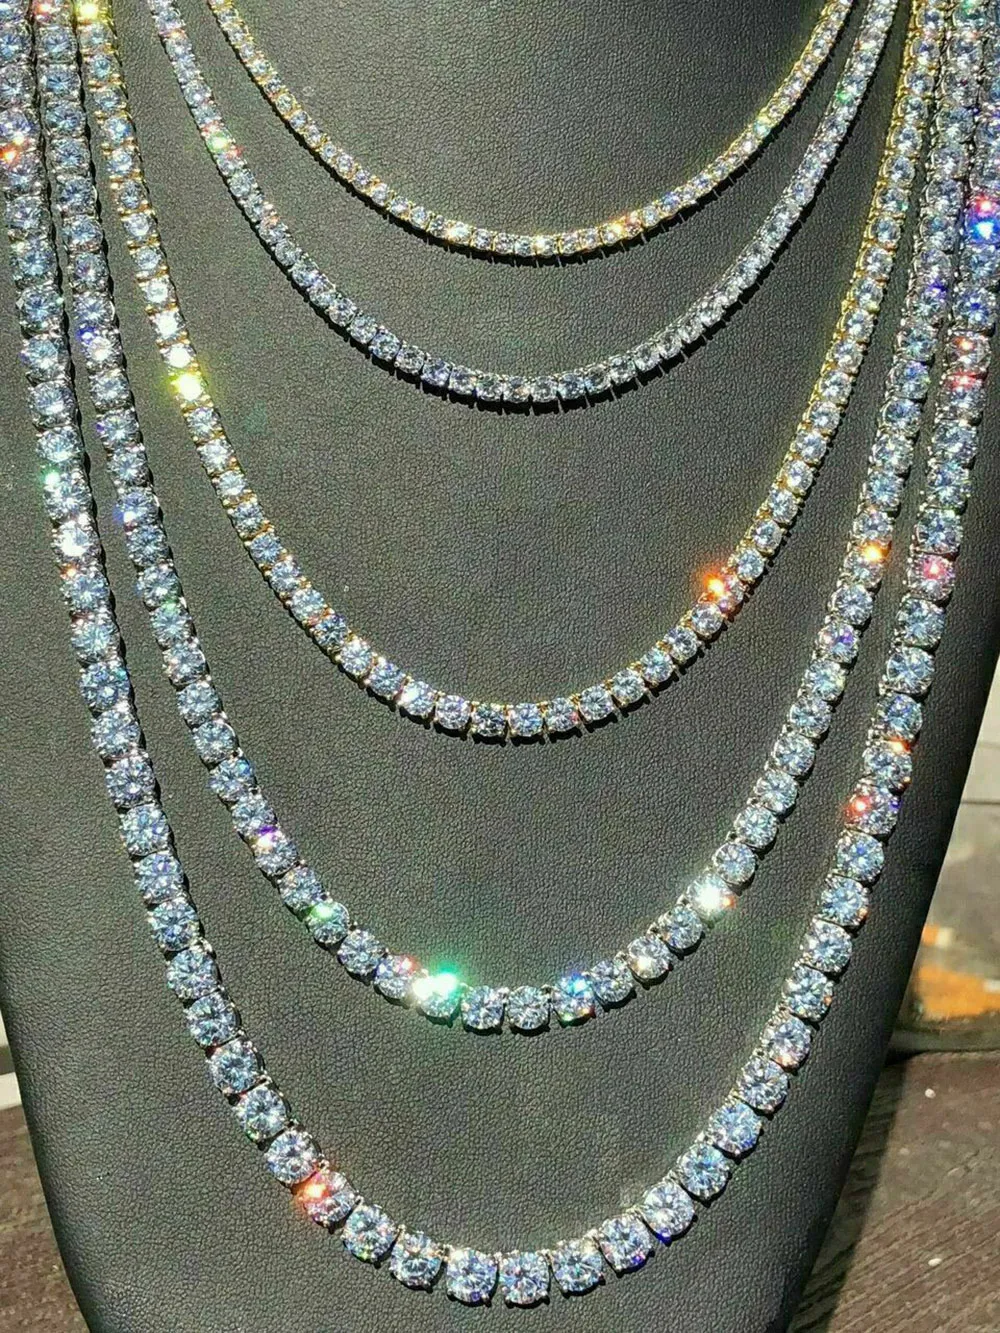 Corrente de tênis gelada pedras de zircônia real prata fileira única homens mulheres 3mm 4mm 5mm colar de diamantes joias presente para festa temática309y